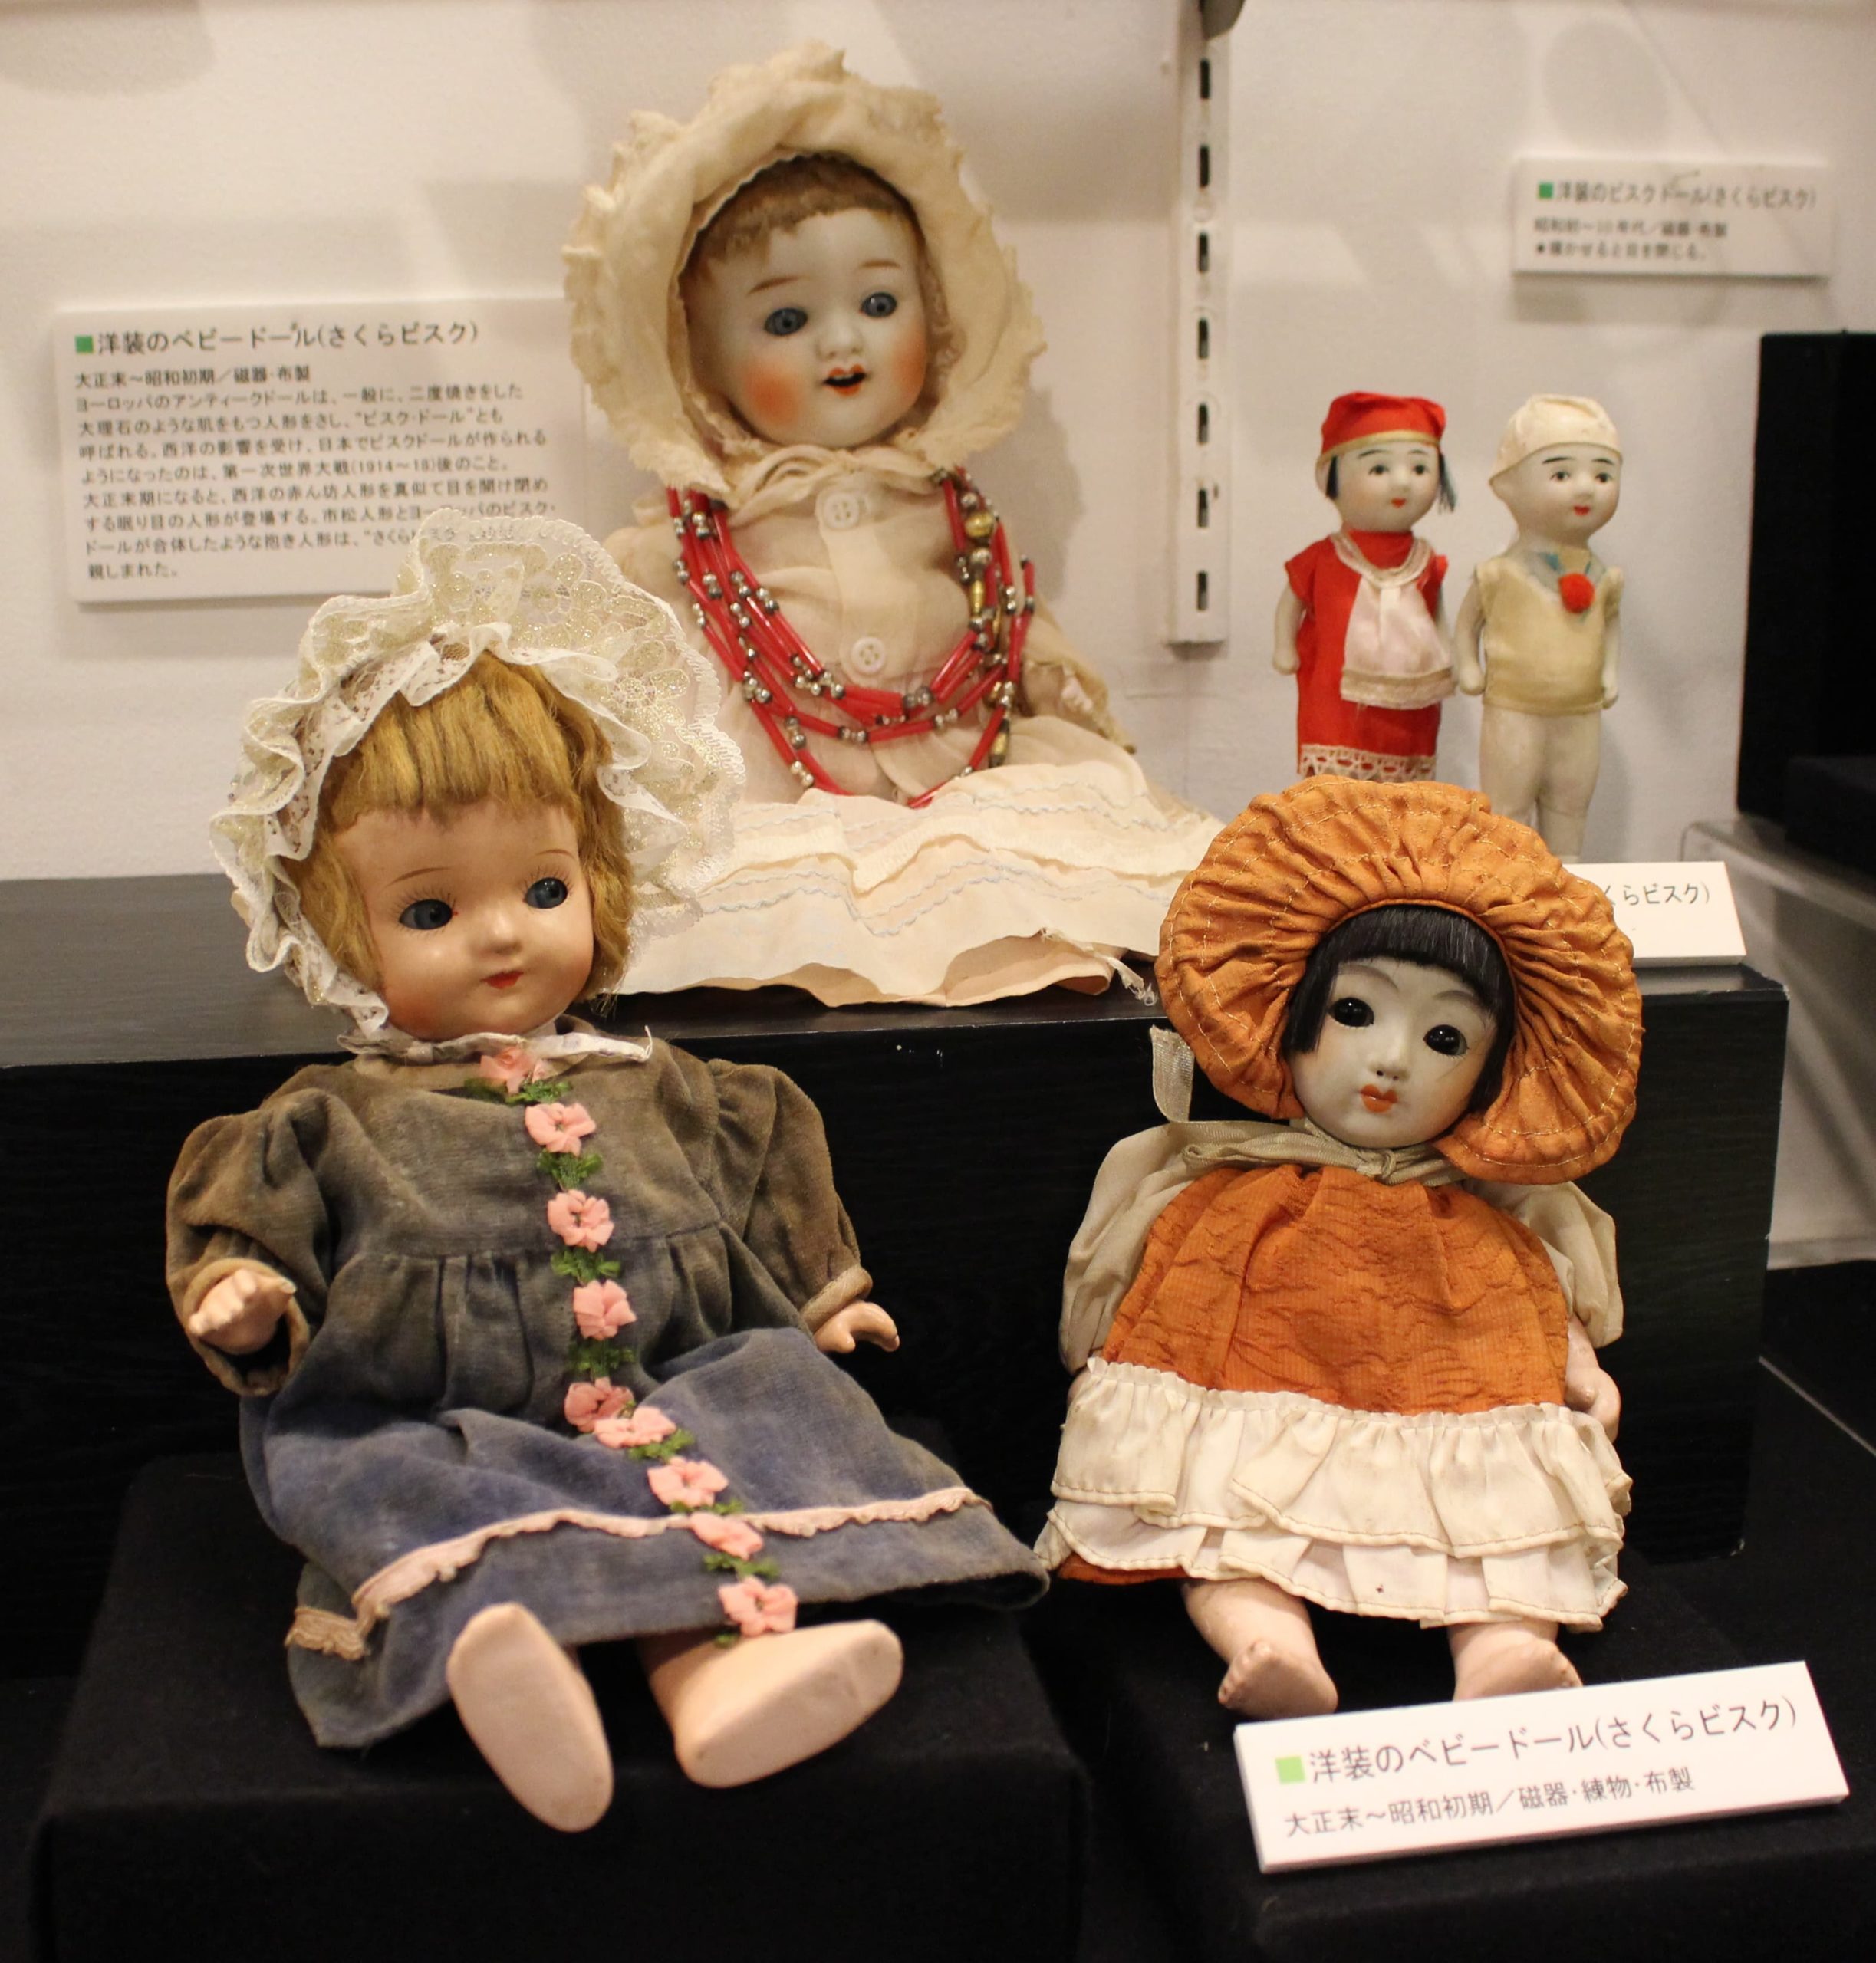 ビスクドール、ハンドメイド、日本製 - おもちゃ/人形